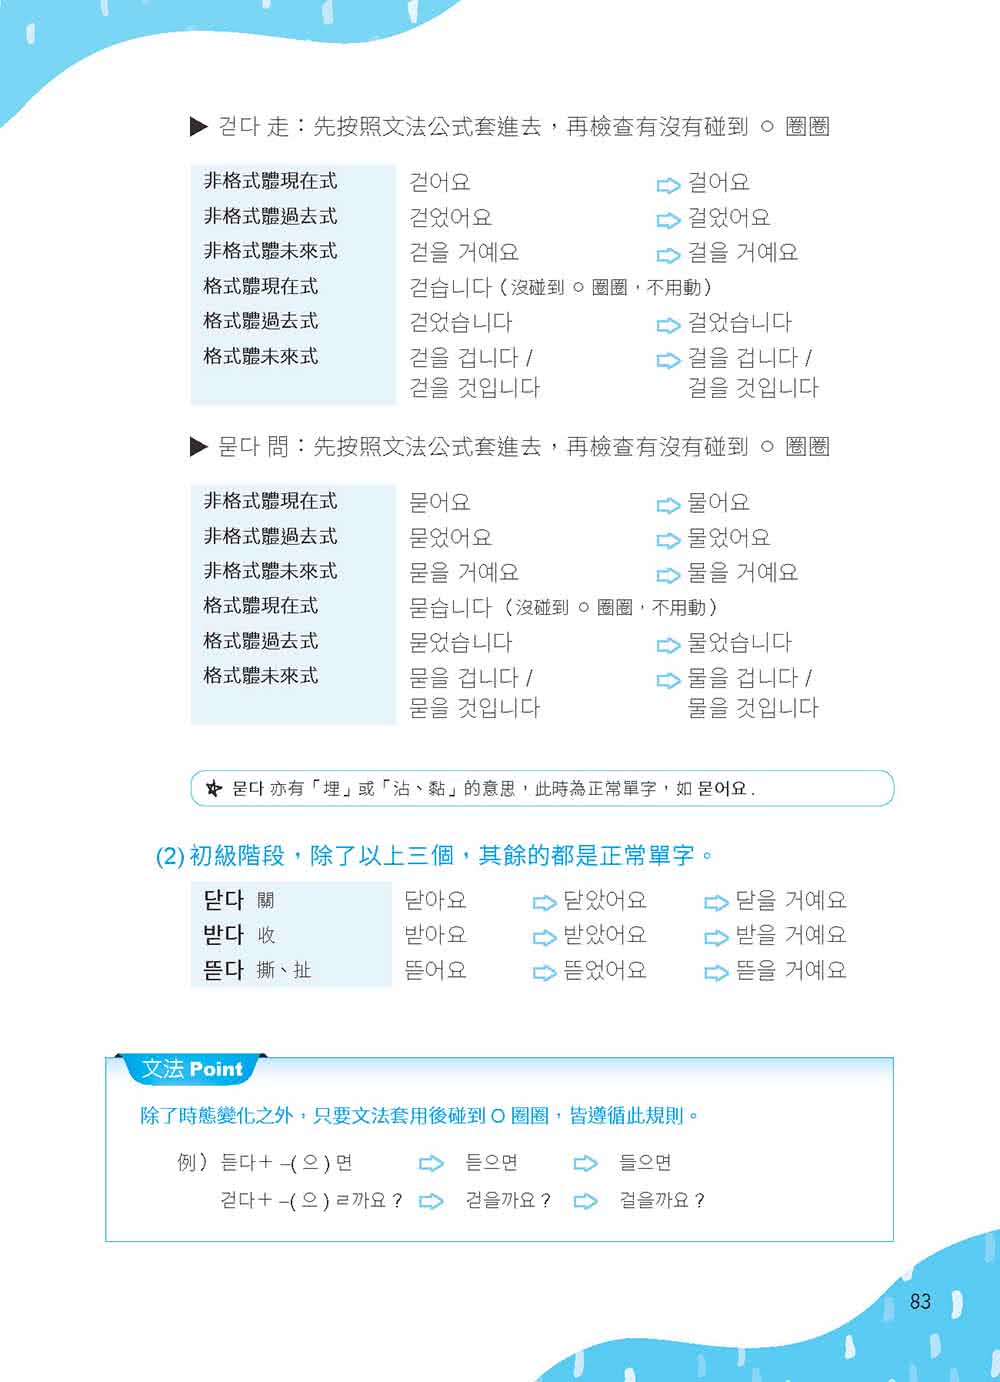 韓語文法關鍵50選，一丁點就通：專為華人打造，最好懂的韓語文法入門書（附教學影片QR碼、文法變化表）